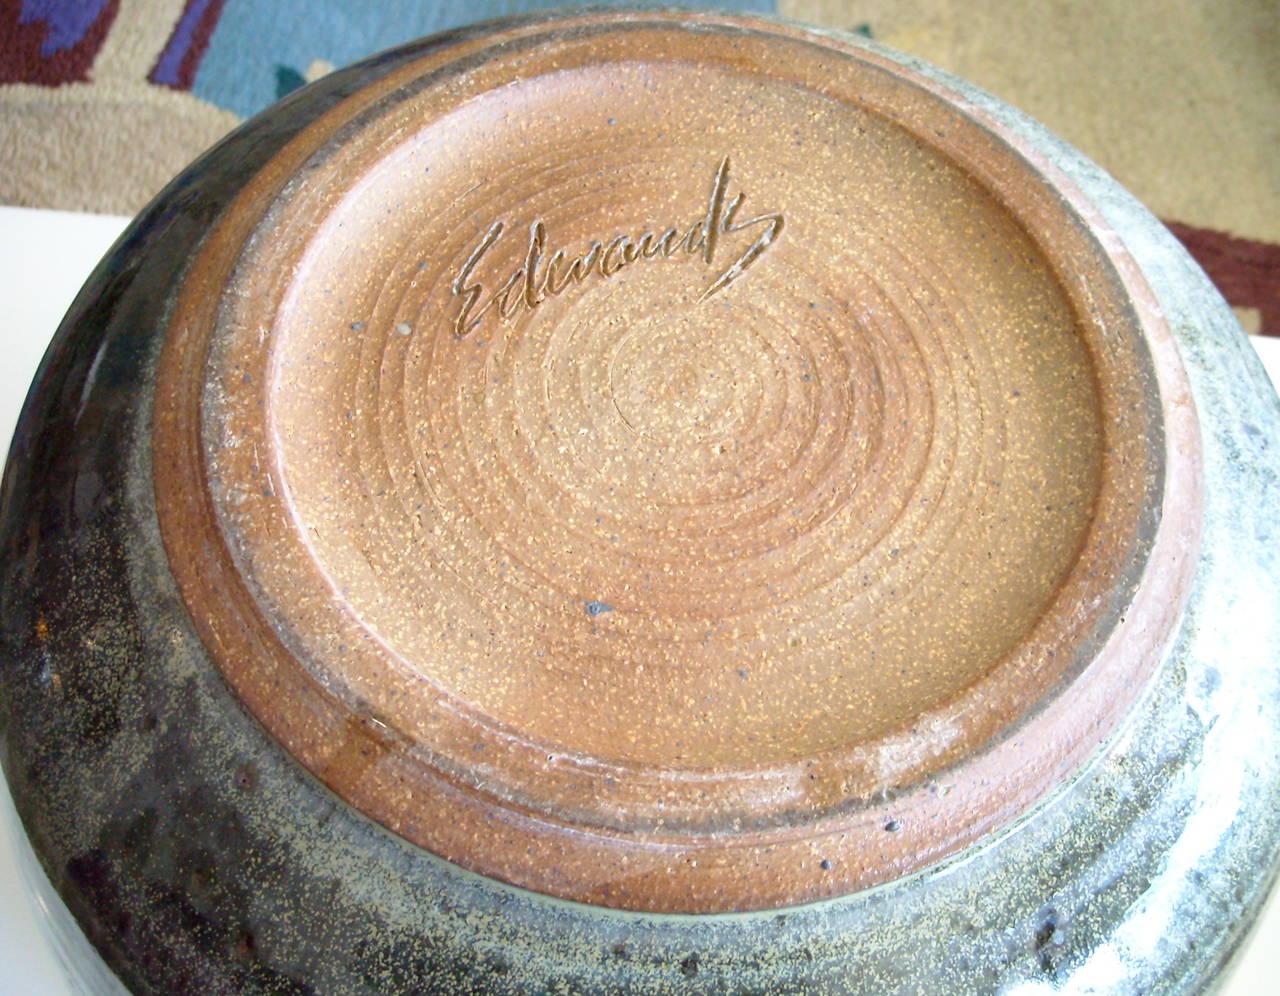 joel edwards pottery